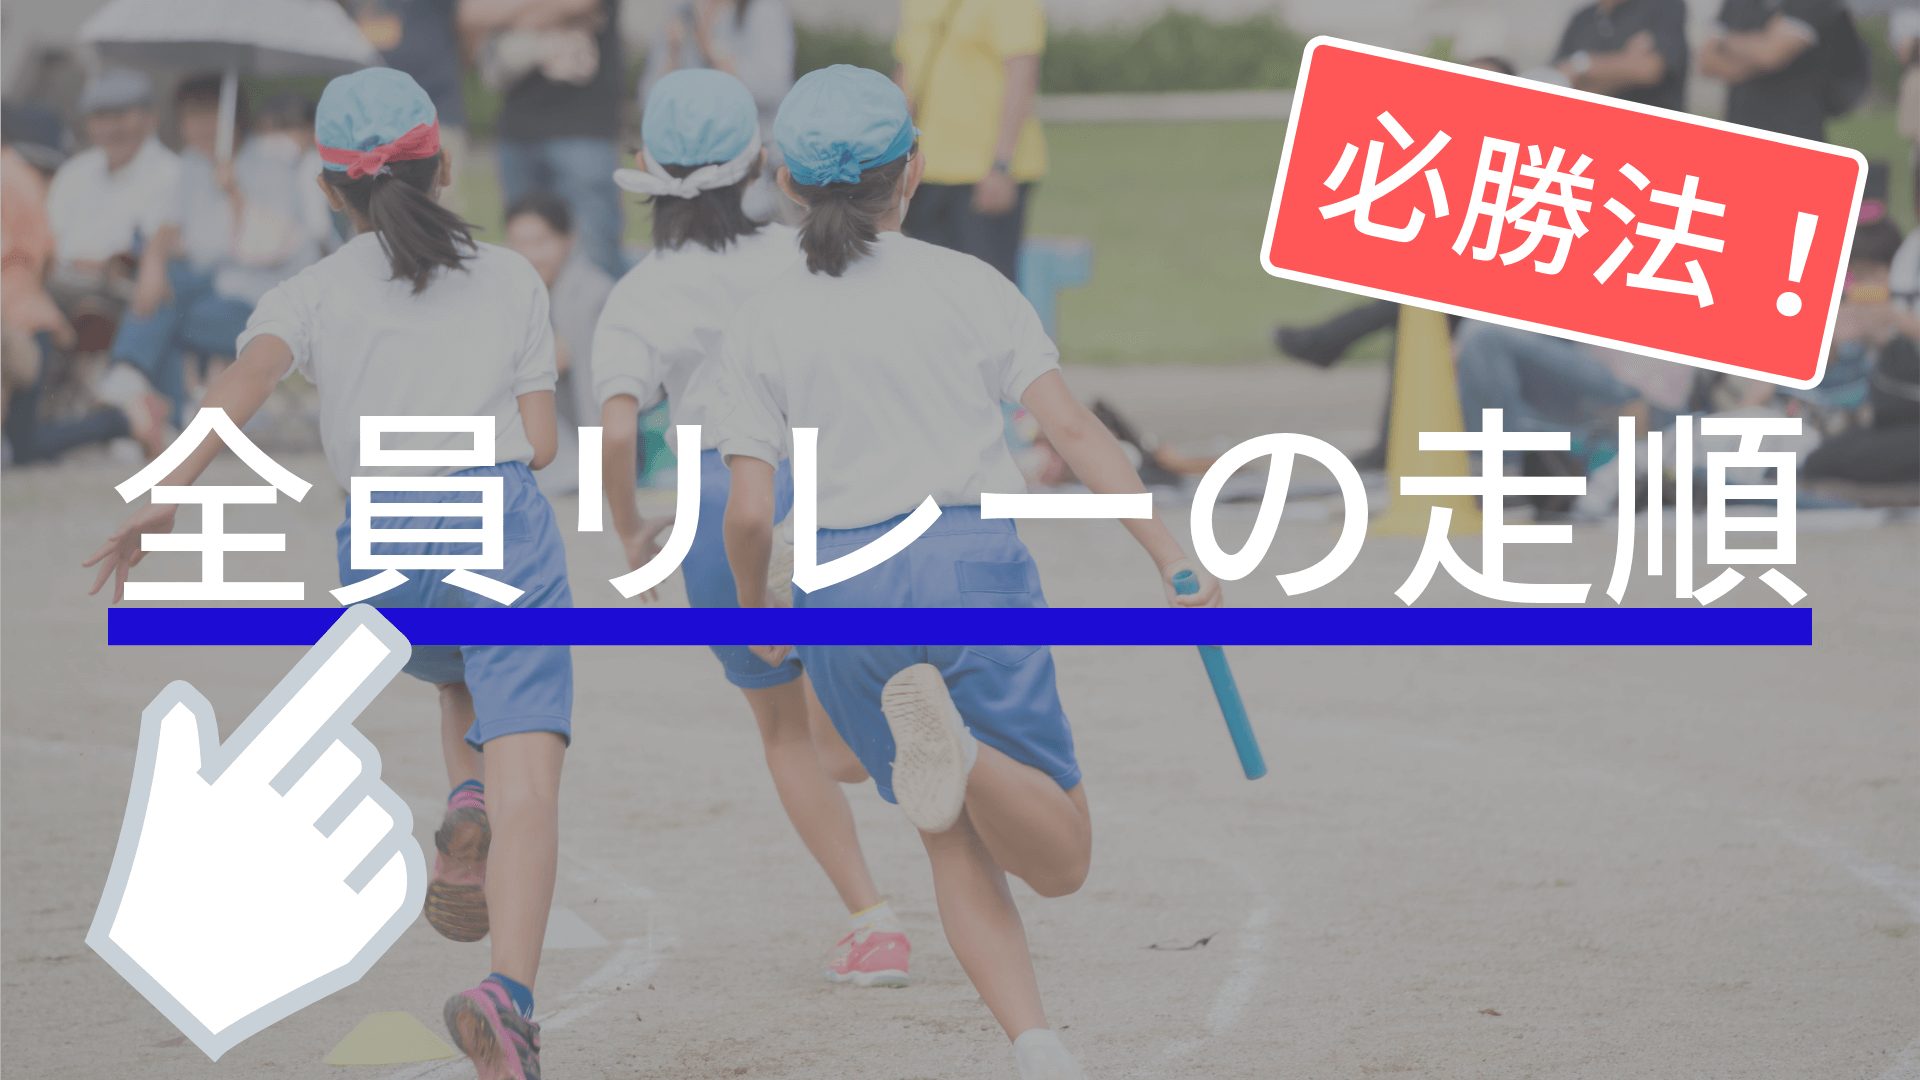 走る順番はこうやって決めろ 運動会の全員リレーで優勝できる走順はコレだ 東京で小学生の足を確実に速くするならgoogle 4 9の陸上アカデミア